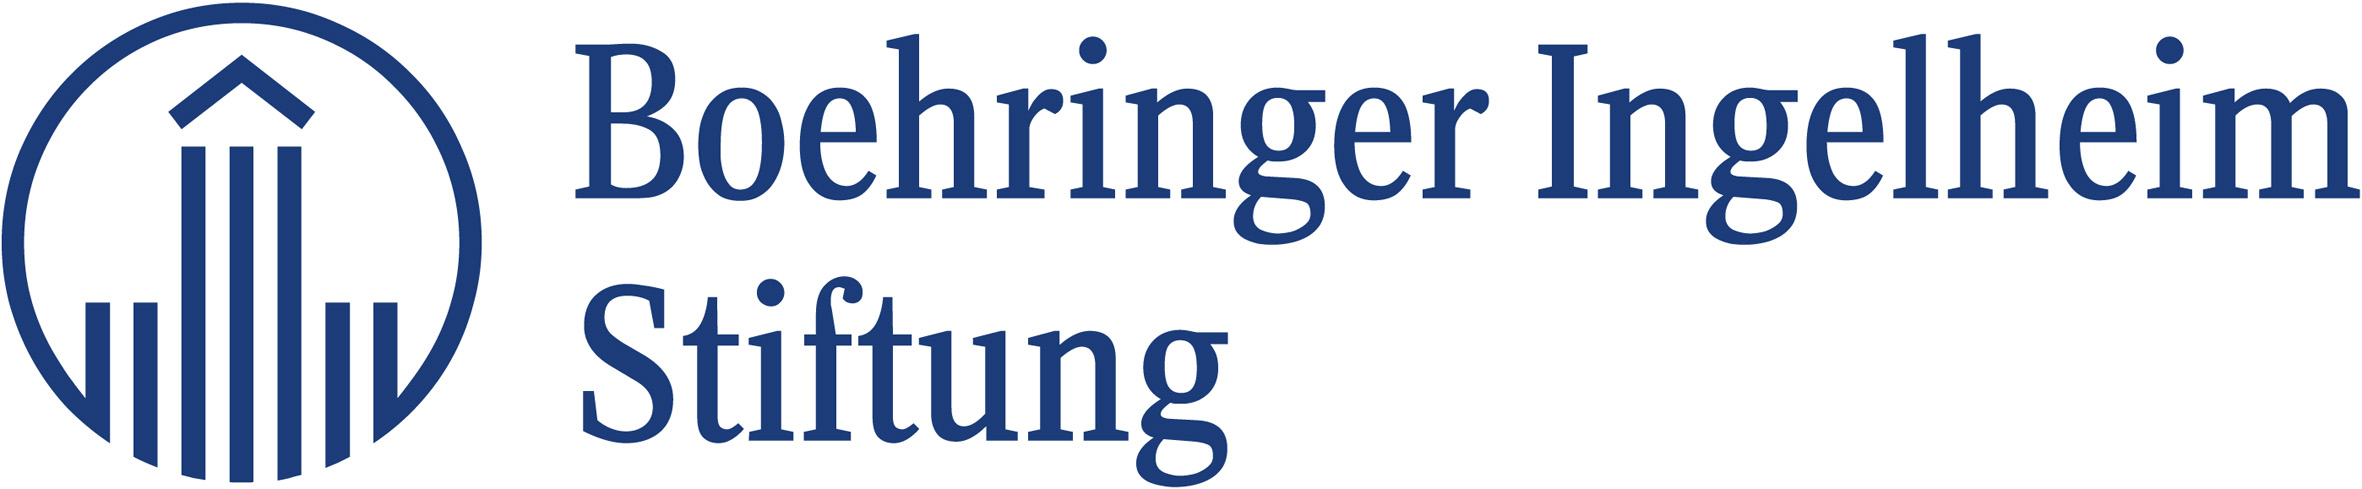 2018-08/bi-stiftung-logo,-blau,-rgb-300-dpi-websites.jpg